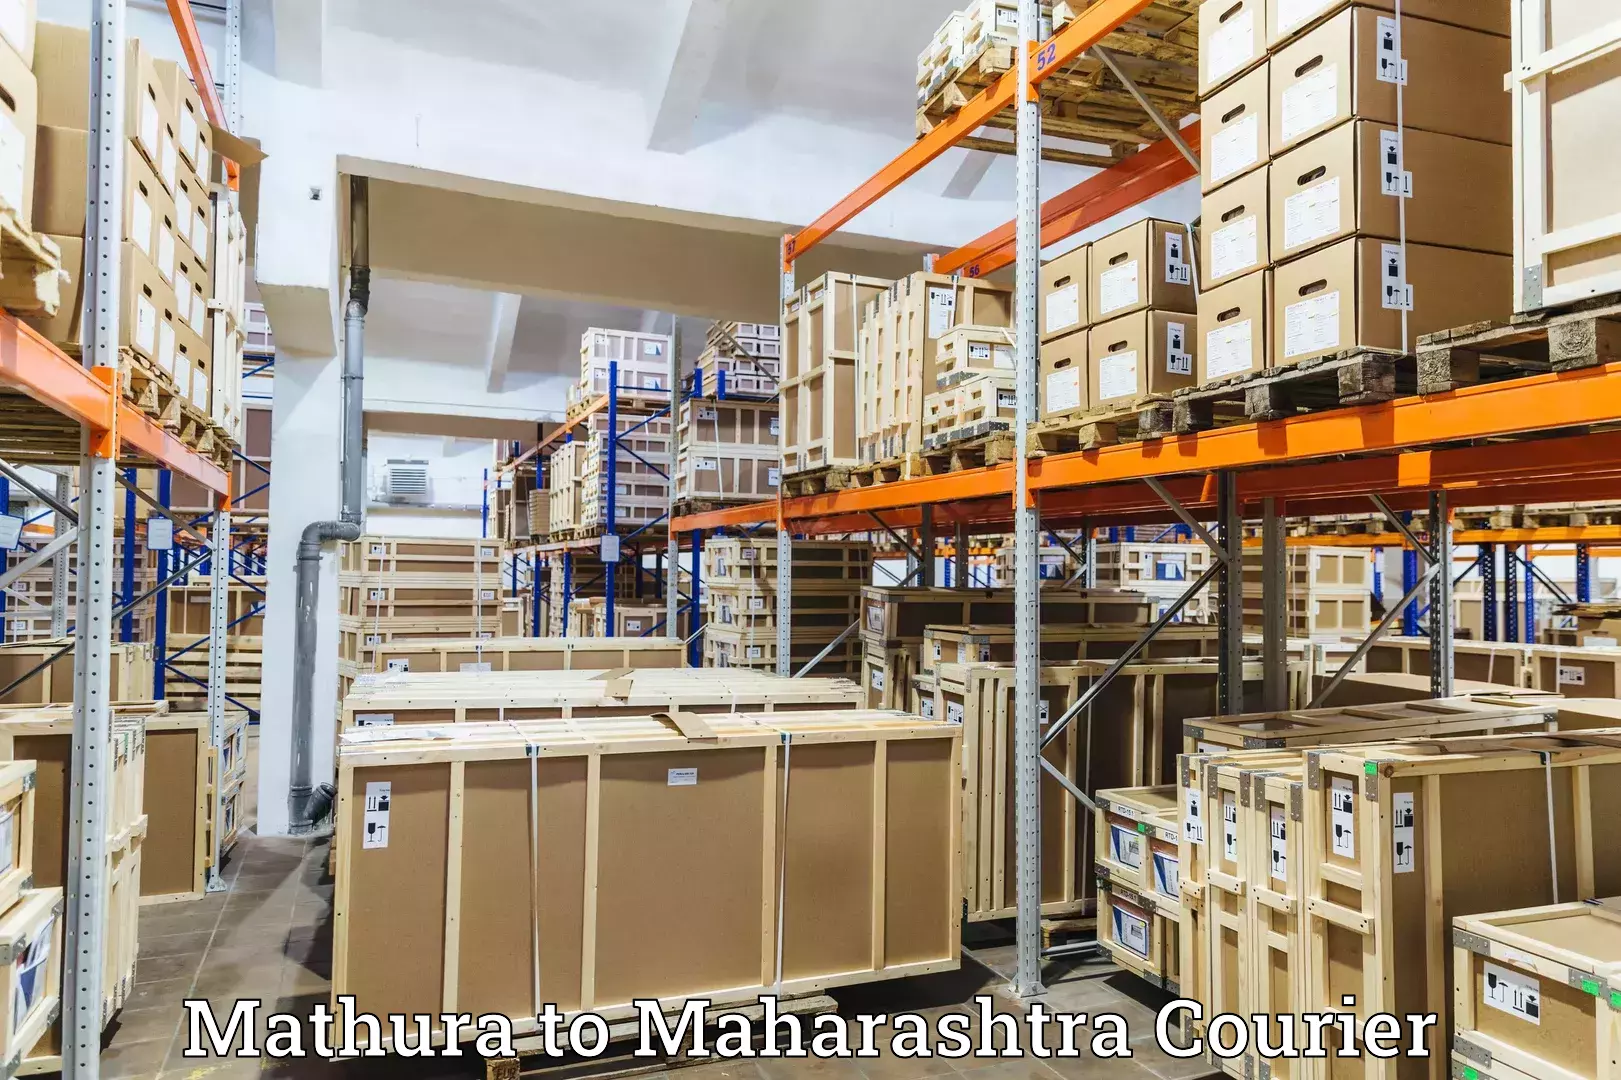 24-hour courier services Mathura to Gadhinglaj